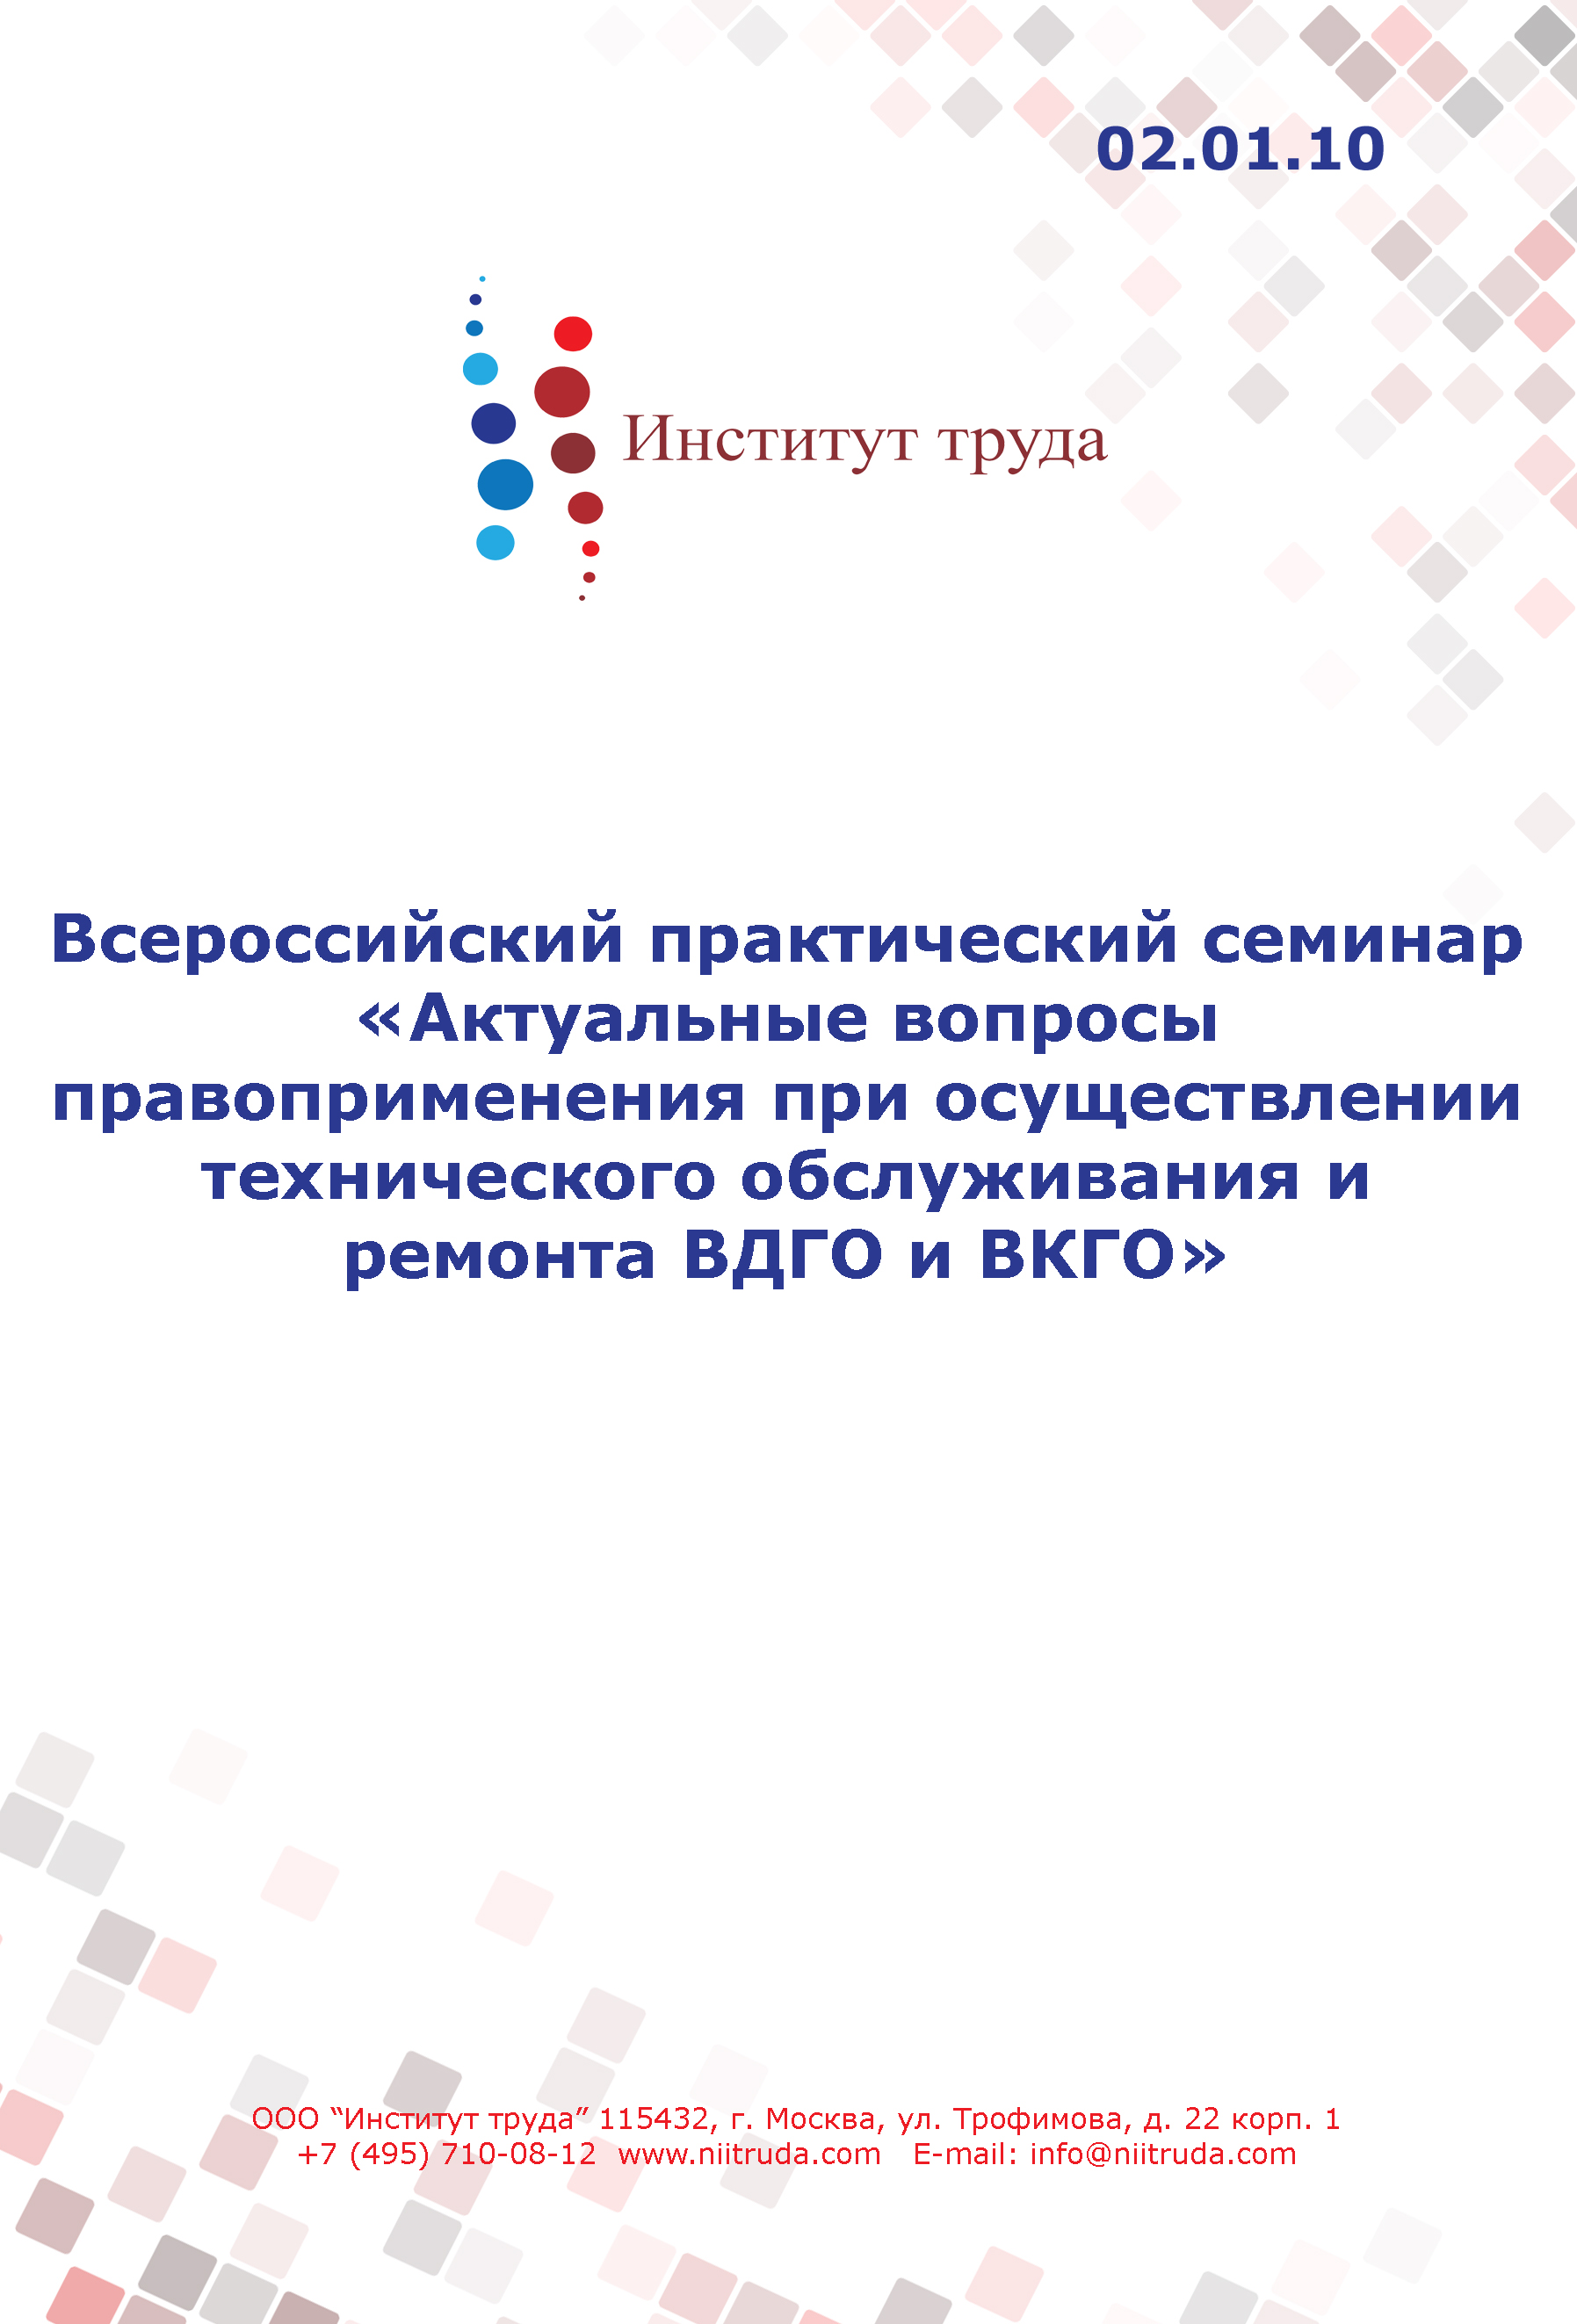 Всероссийский практический семинар «Актуальные вопросы правоприменения при осуществлении технического обслуживания и ремонта ВДГО и ВКГО» 